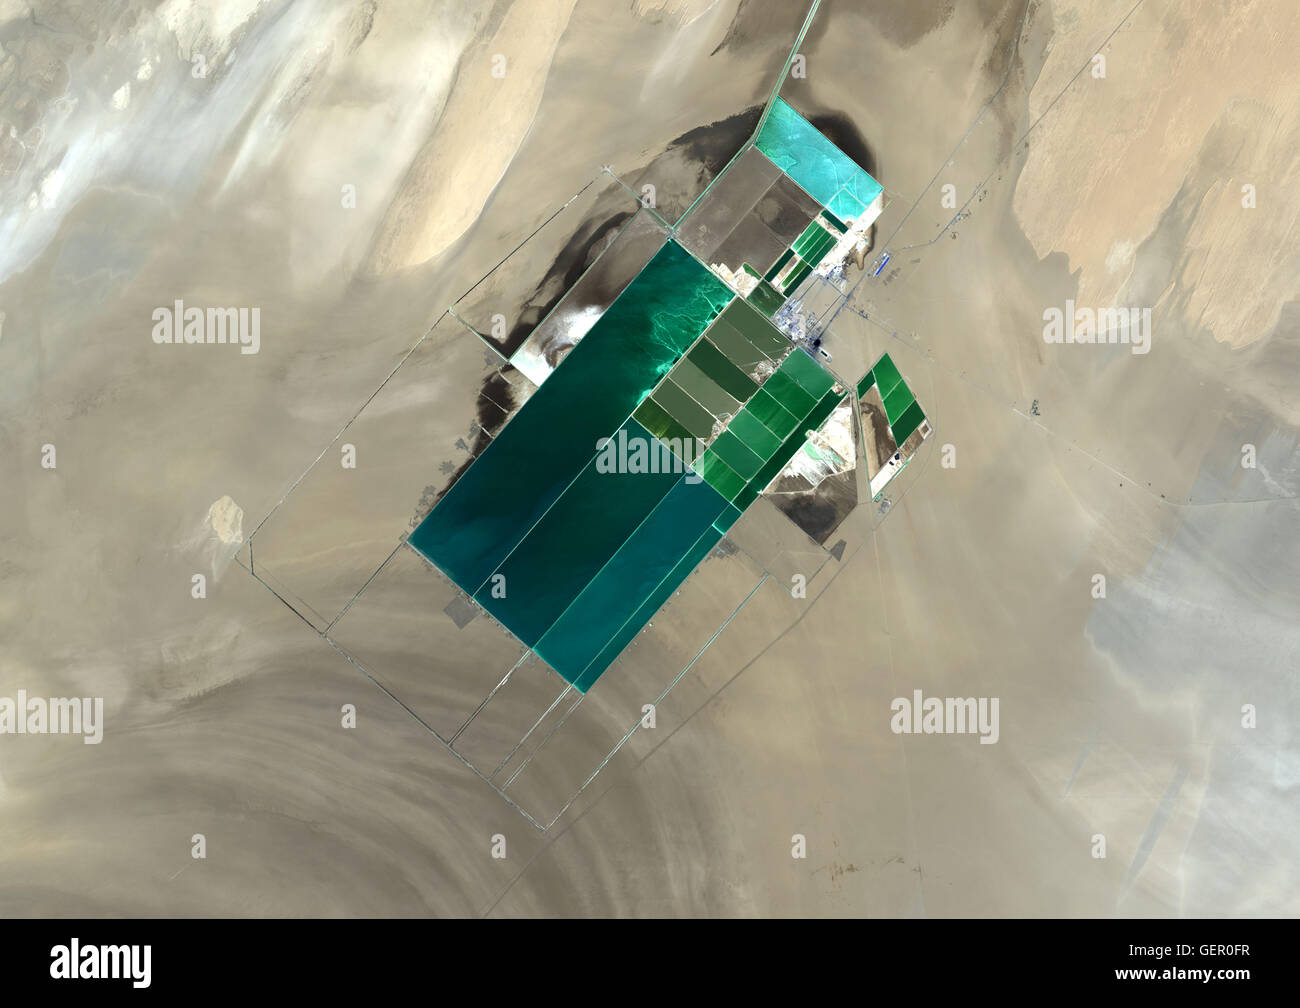 La imagen de satélite muestra la potasa estanques de evaporación en Lop Nur, un antiguo lago salado en la región de Xinjiang.que se extendió por 20 kilómetros. El sol evapora el agua rica en cloruro de potasio, dejando detrás de potasa que se utiliza principalmente en fertilizantes en t Foto de stock